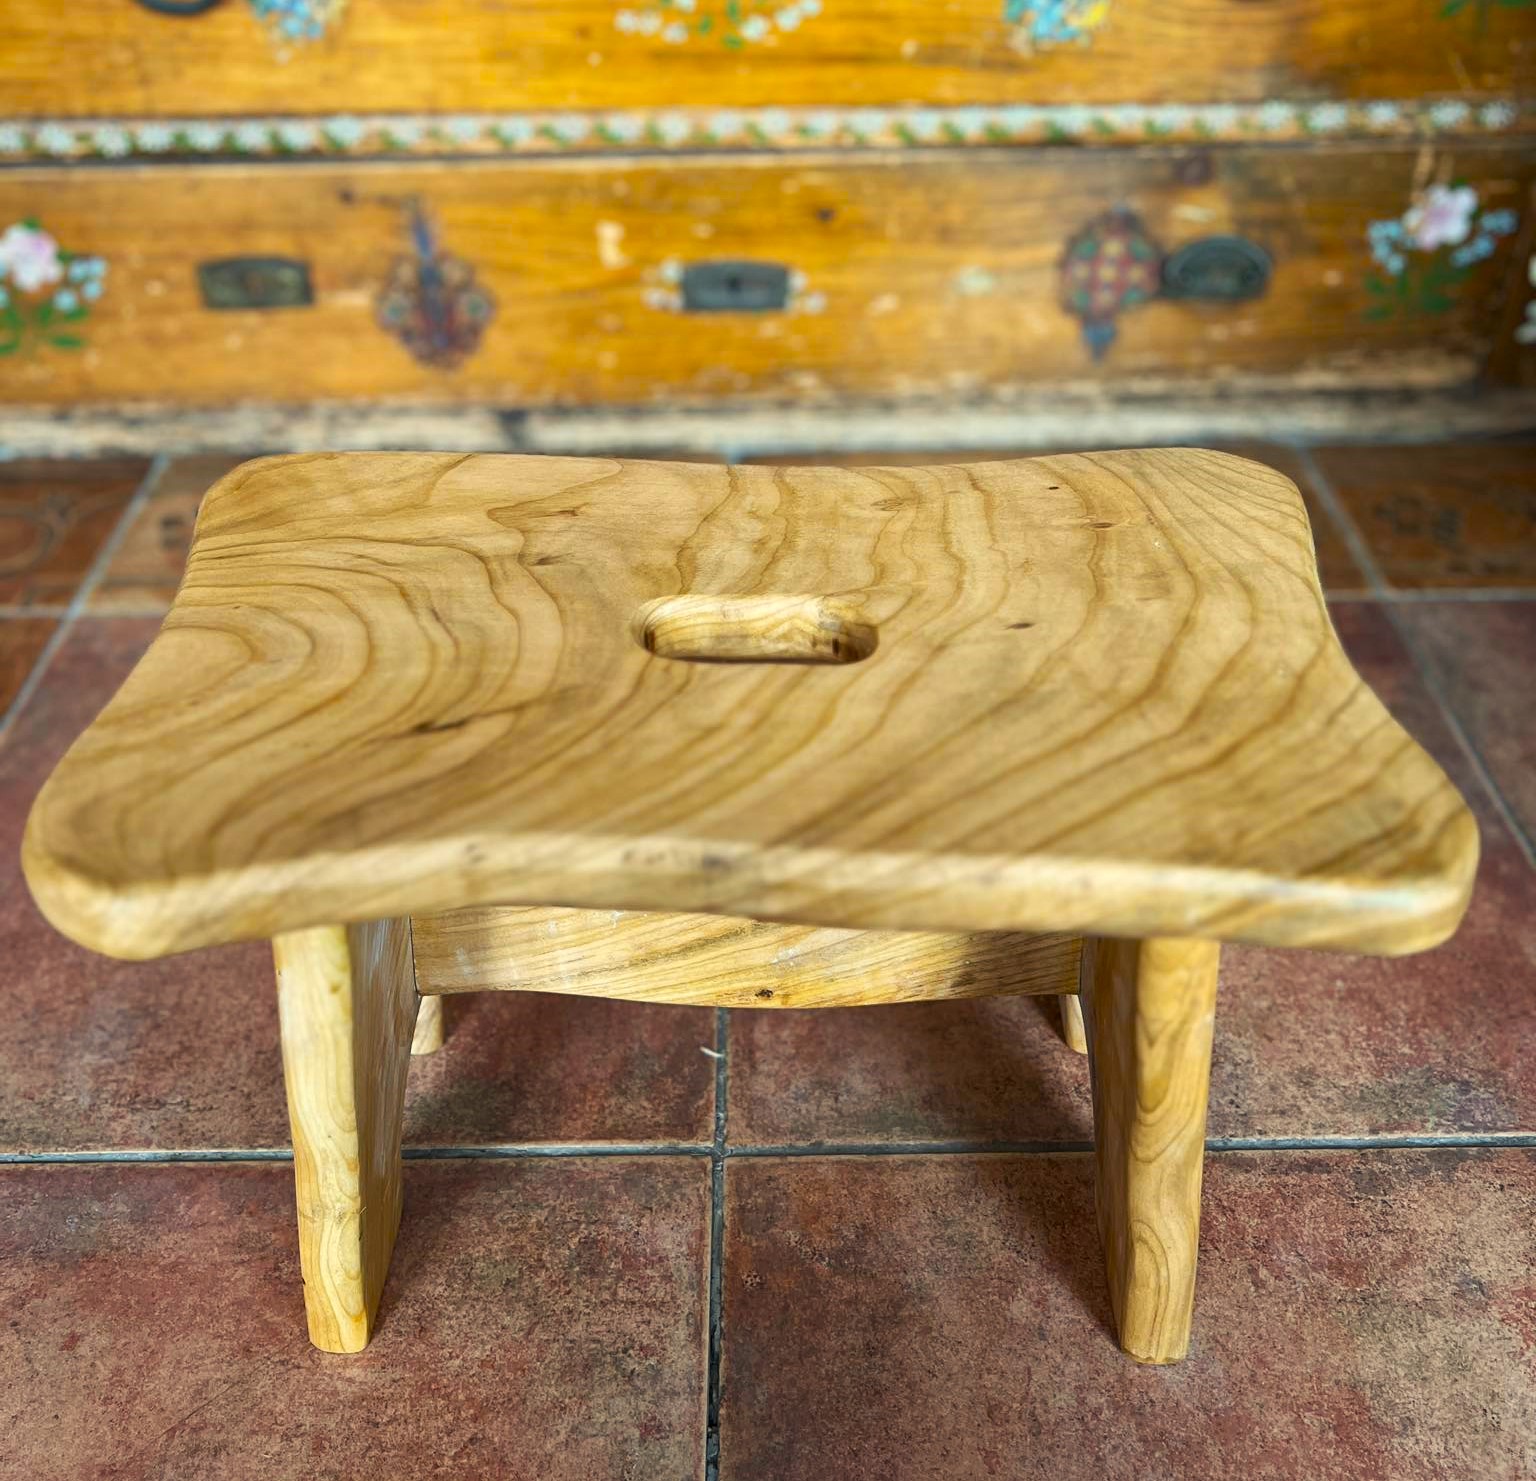 Drevený stolček – hokerlík Čerešňa